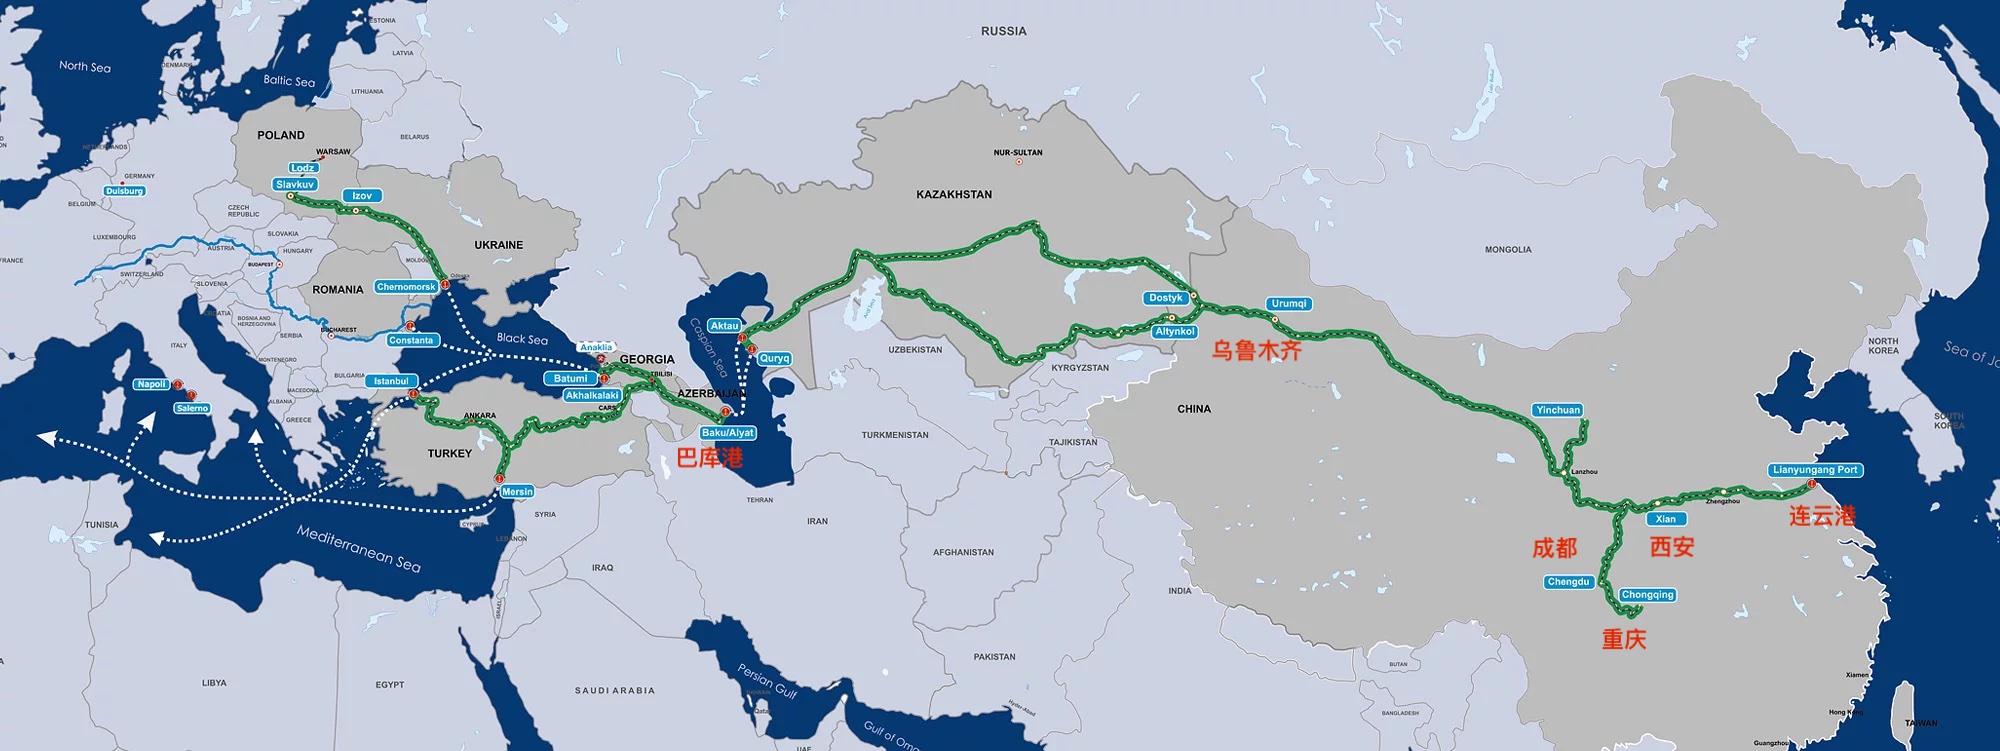 Открыт новый хаб консолидации в Шэньяне. Отправлен первый грузовой поезд в Россию 1